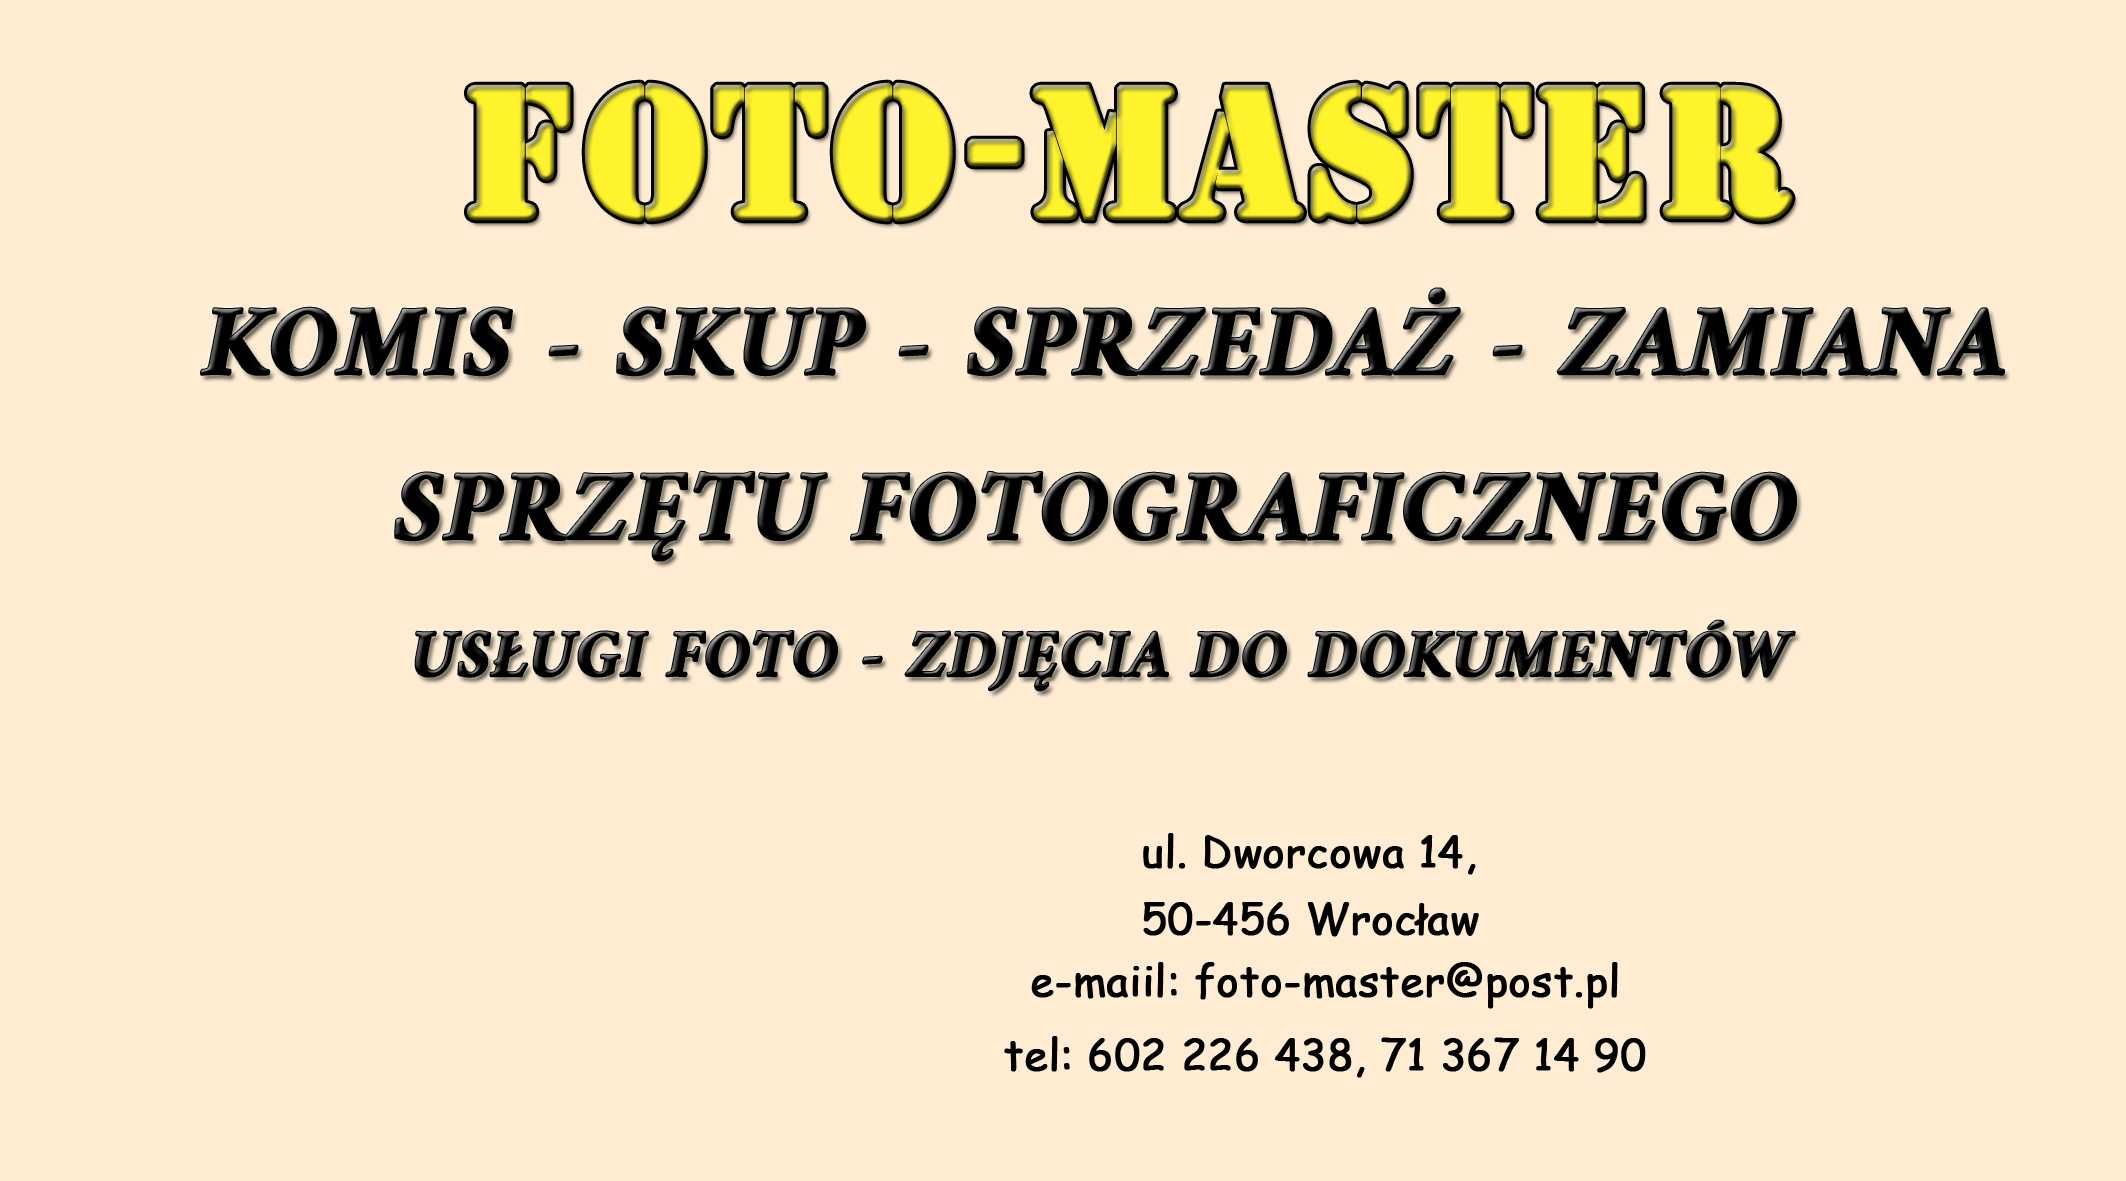 Oferta Foto-Master Wrocław. Skup, Sprzedaż, Zamiana